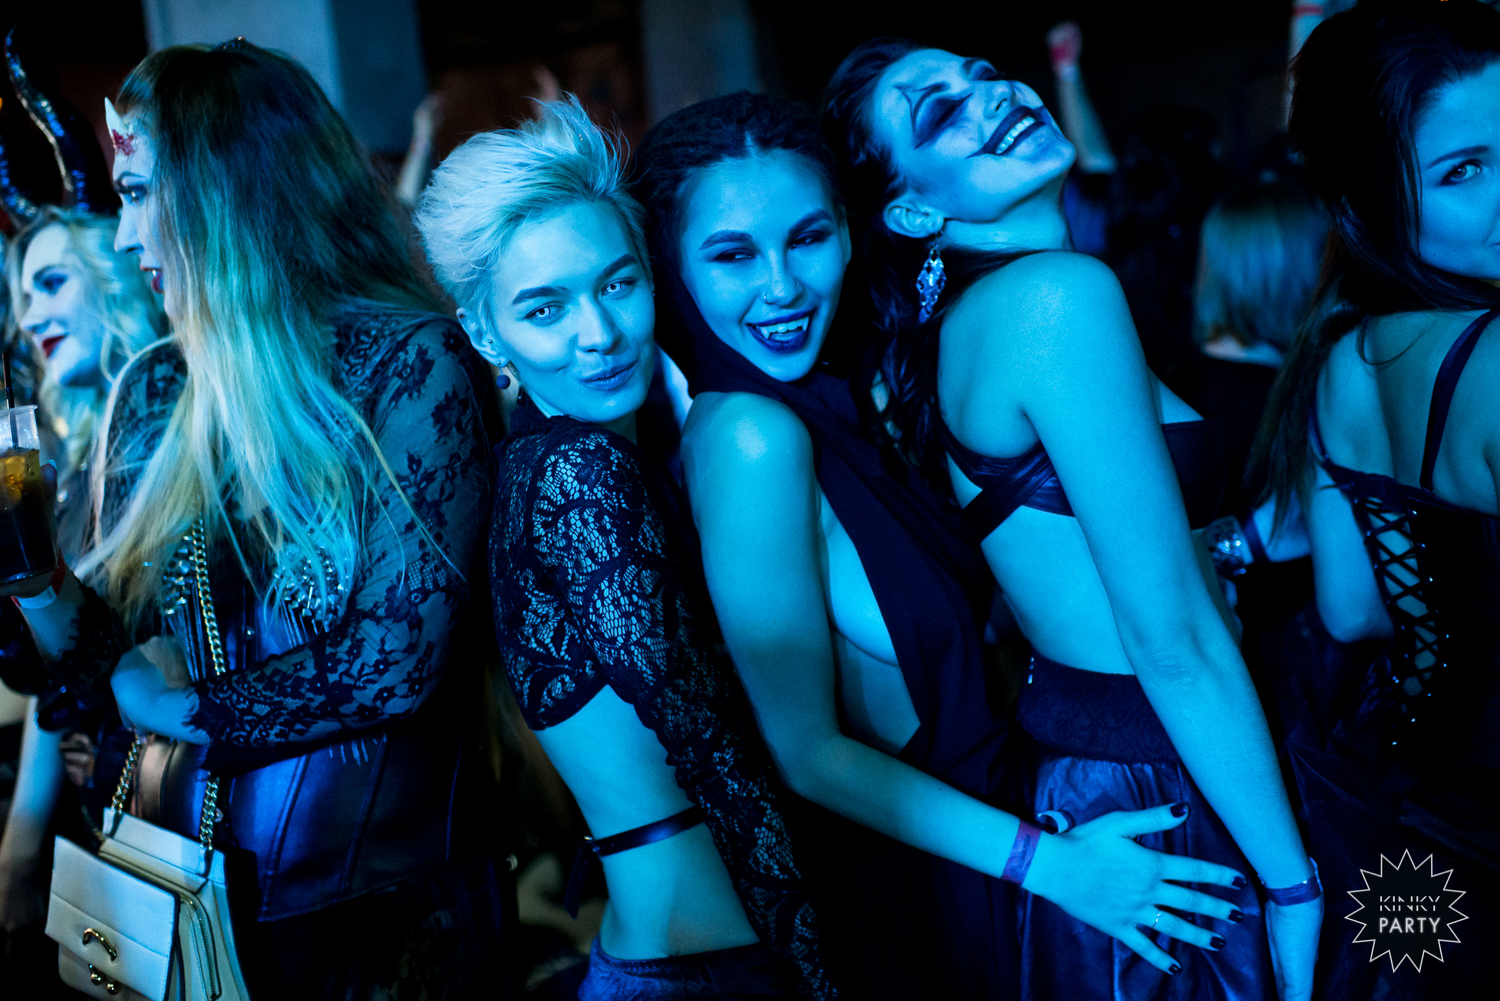 Закрытая секс вечеринка с блядьми в клубе